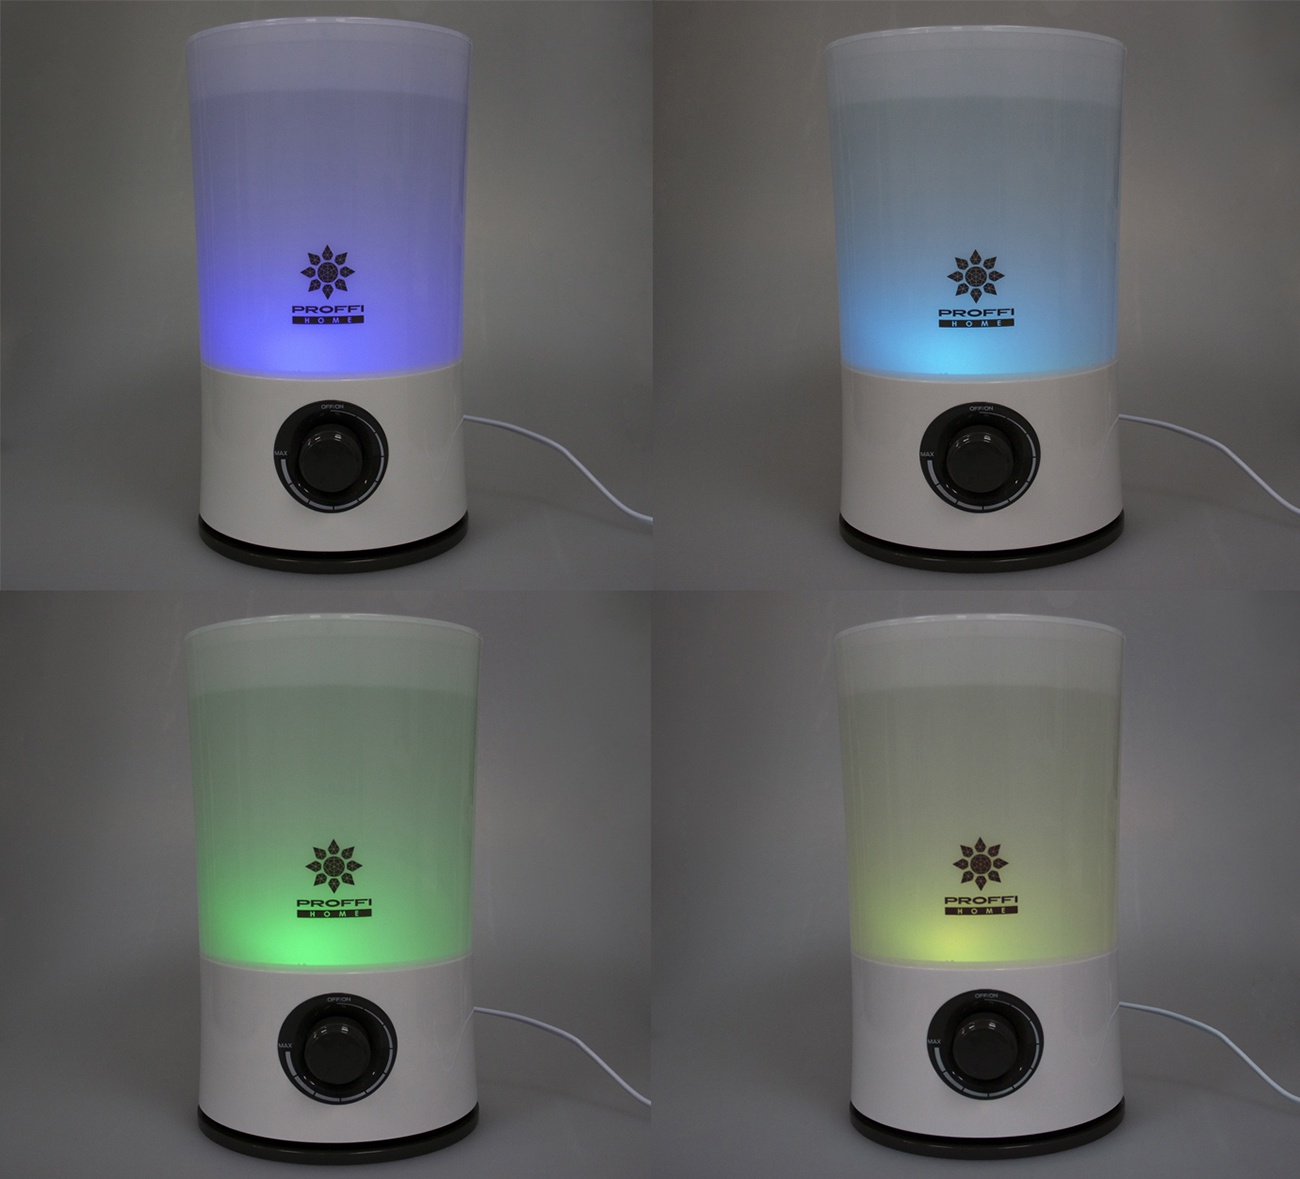 фото Увлажнитель воздуха PROFFI ультразвуковой с LED подсветкой корпуса, 6 цветов, белый, бирюзовый, зеленый, красный, фиолетовый, желтый, сиреневый Proffi home